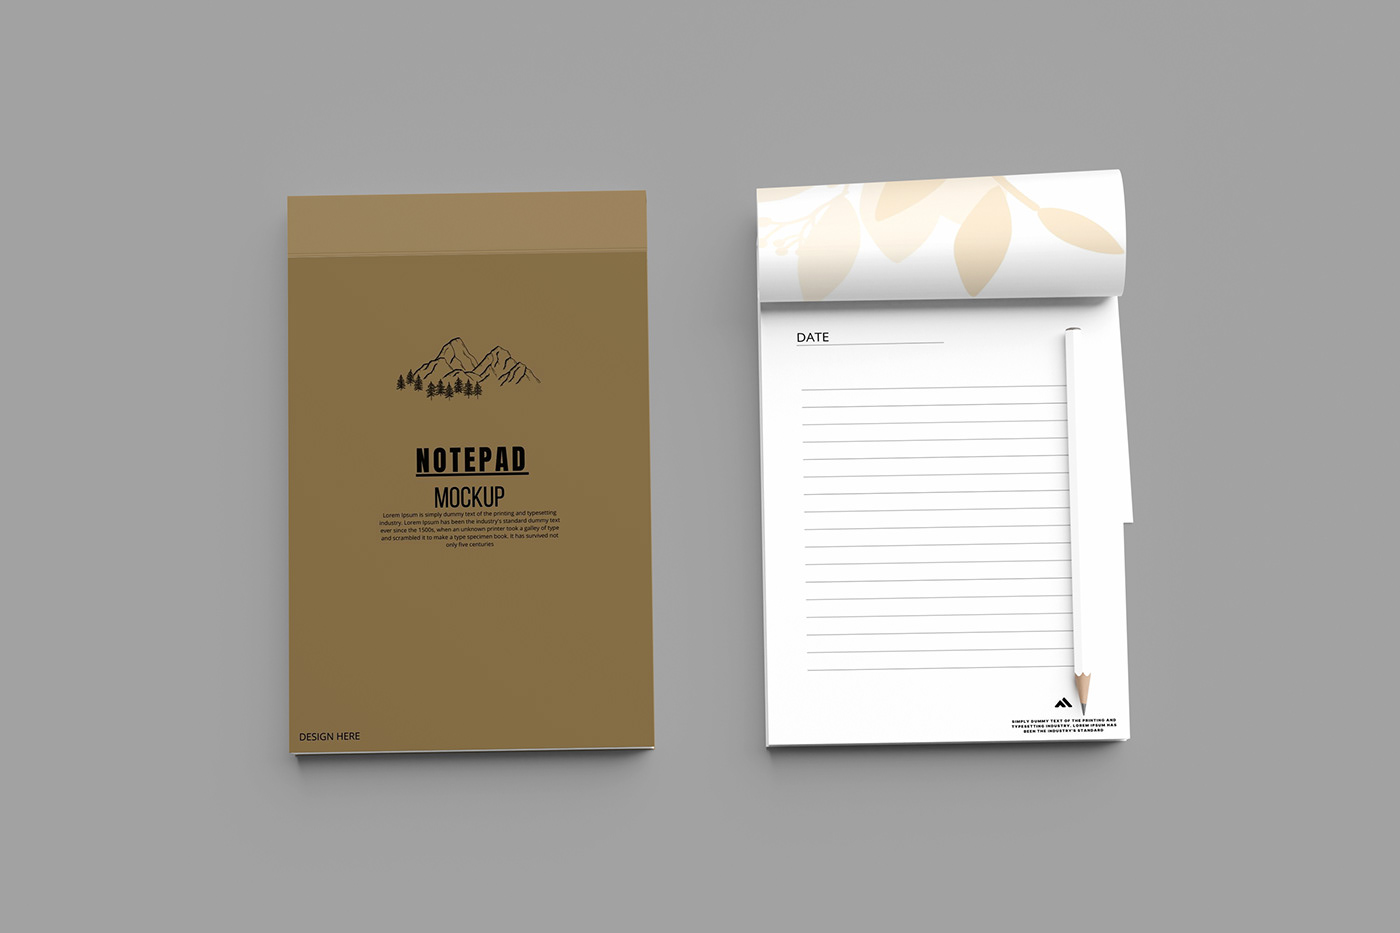 design designer graphic designgraphic Mockup notepad